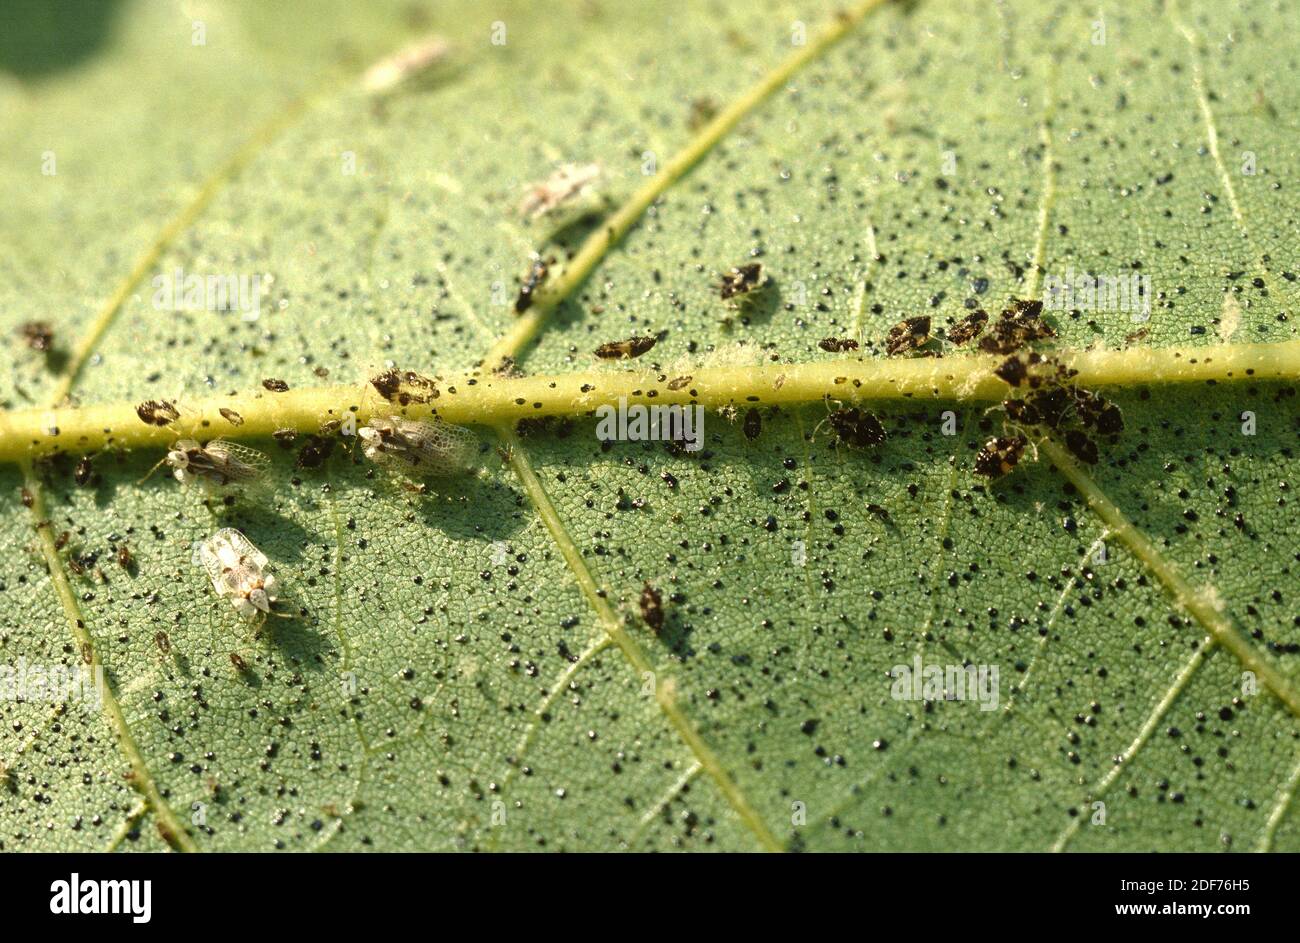 Il baco di merletto di Sycamore (Corythucha ciliata) è un insetto di hemiptera che si nutre di linfa. Adulti e larve. Foto Stock